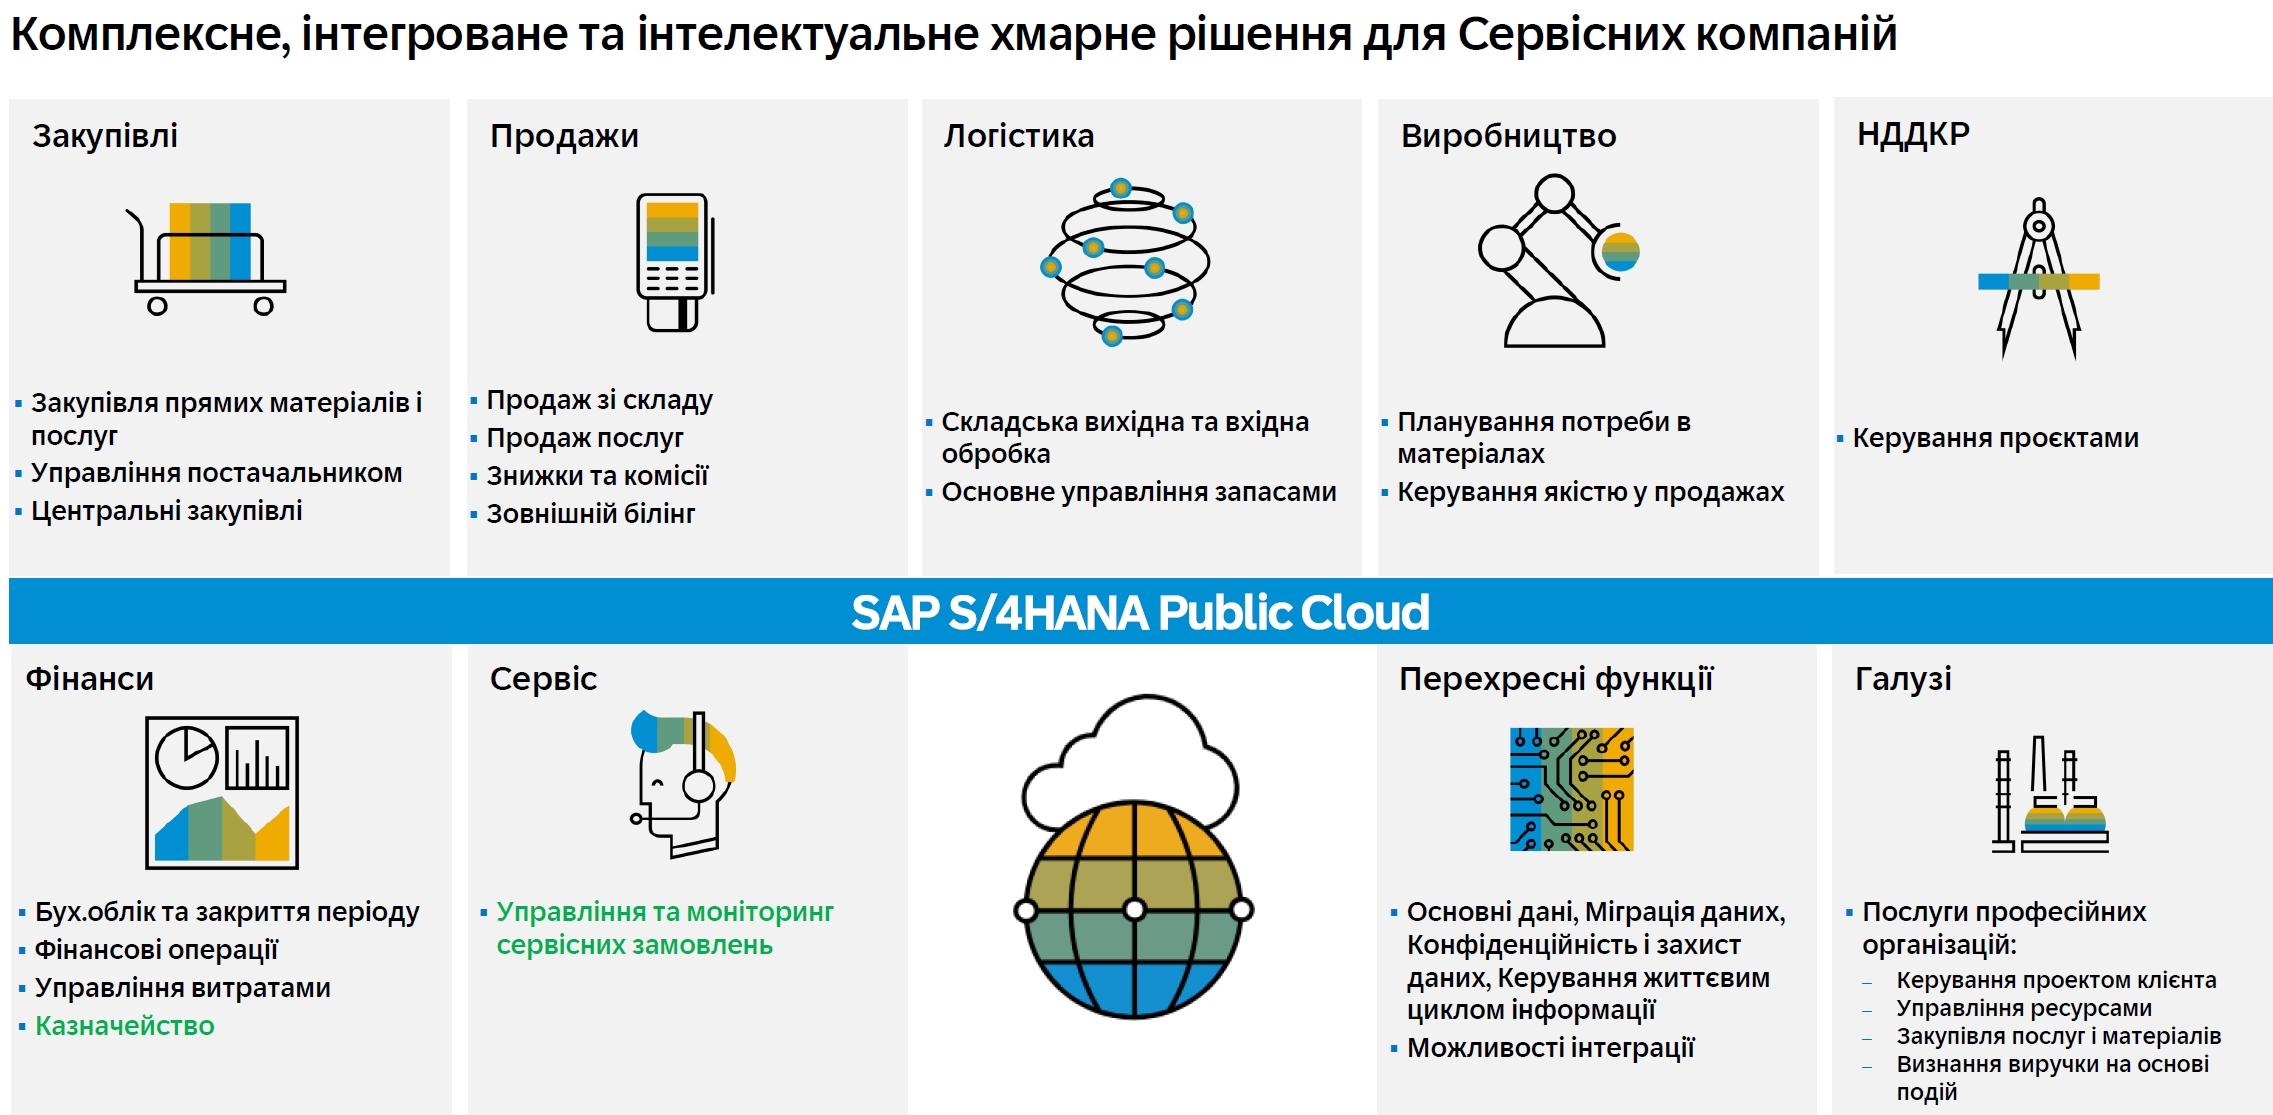 Локалізація SAP Cloude Public для України